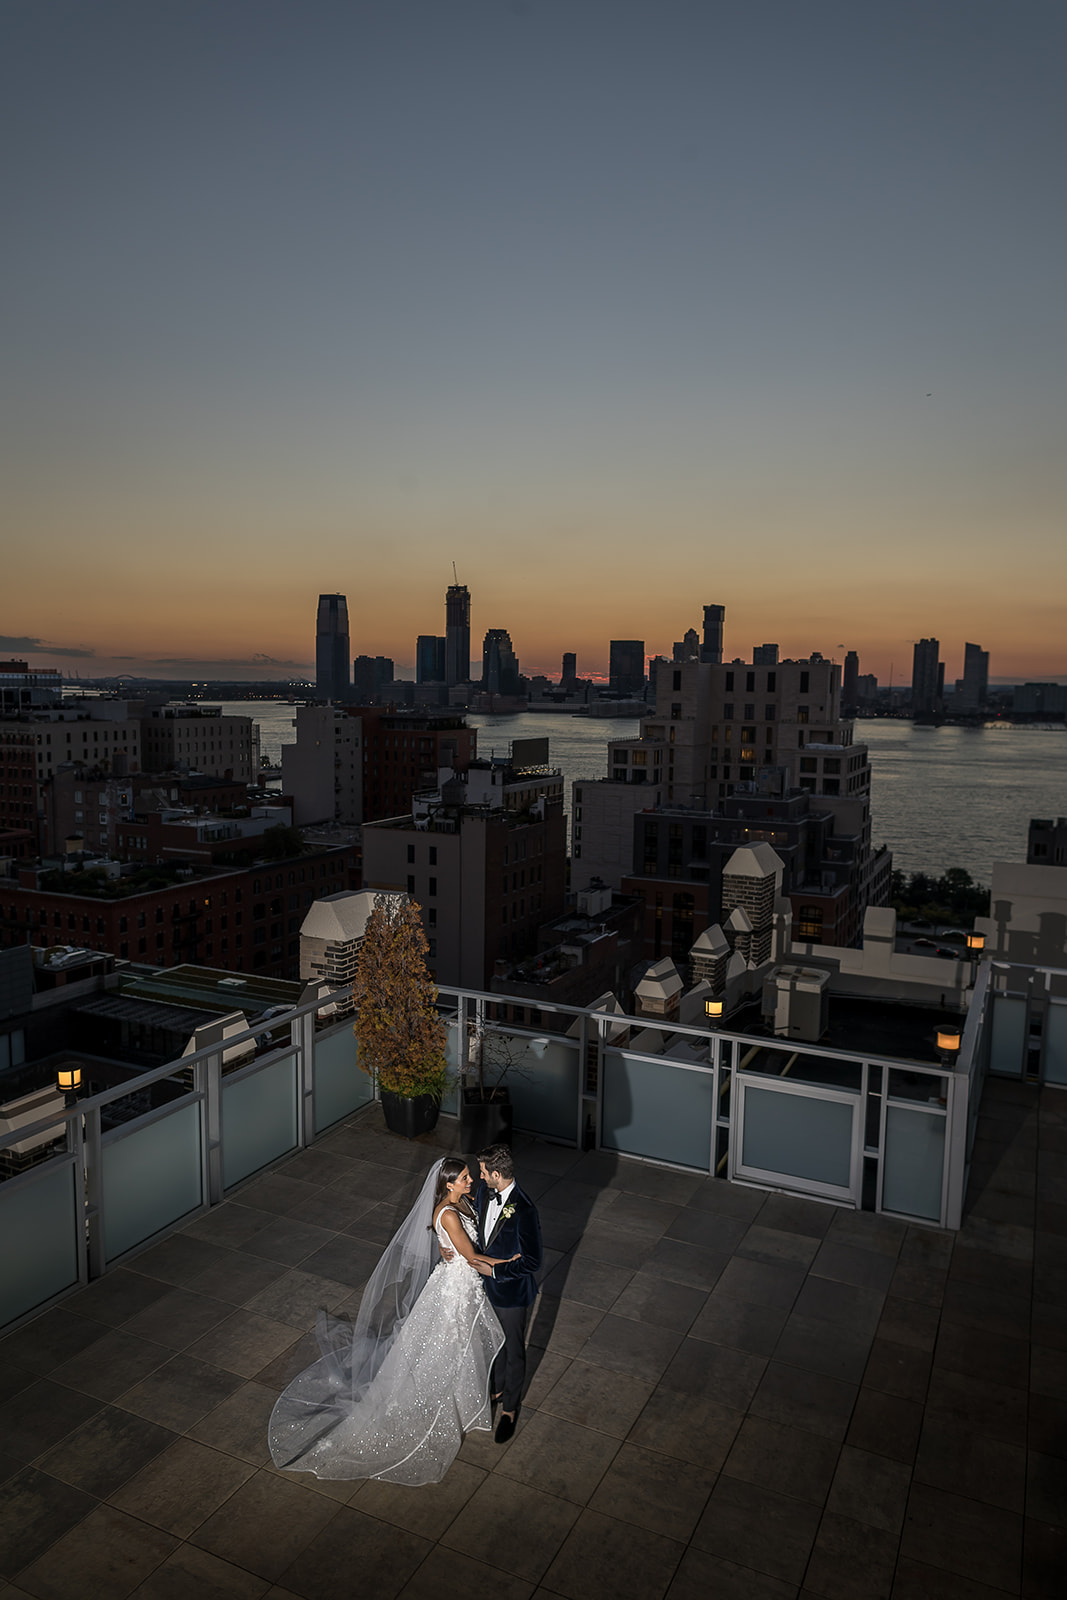 Tribeca Rooftop + 360°